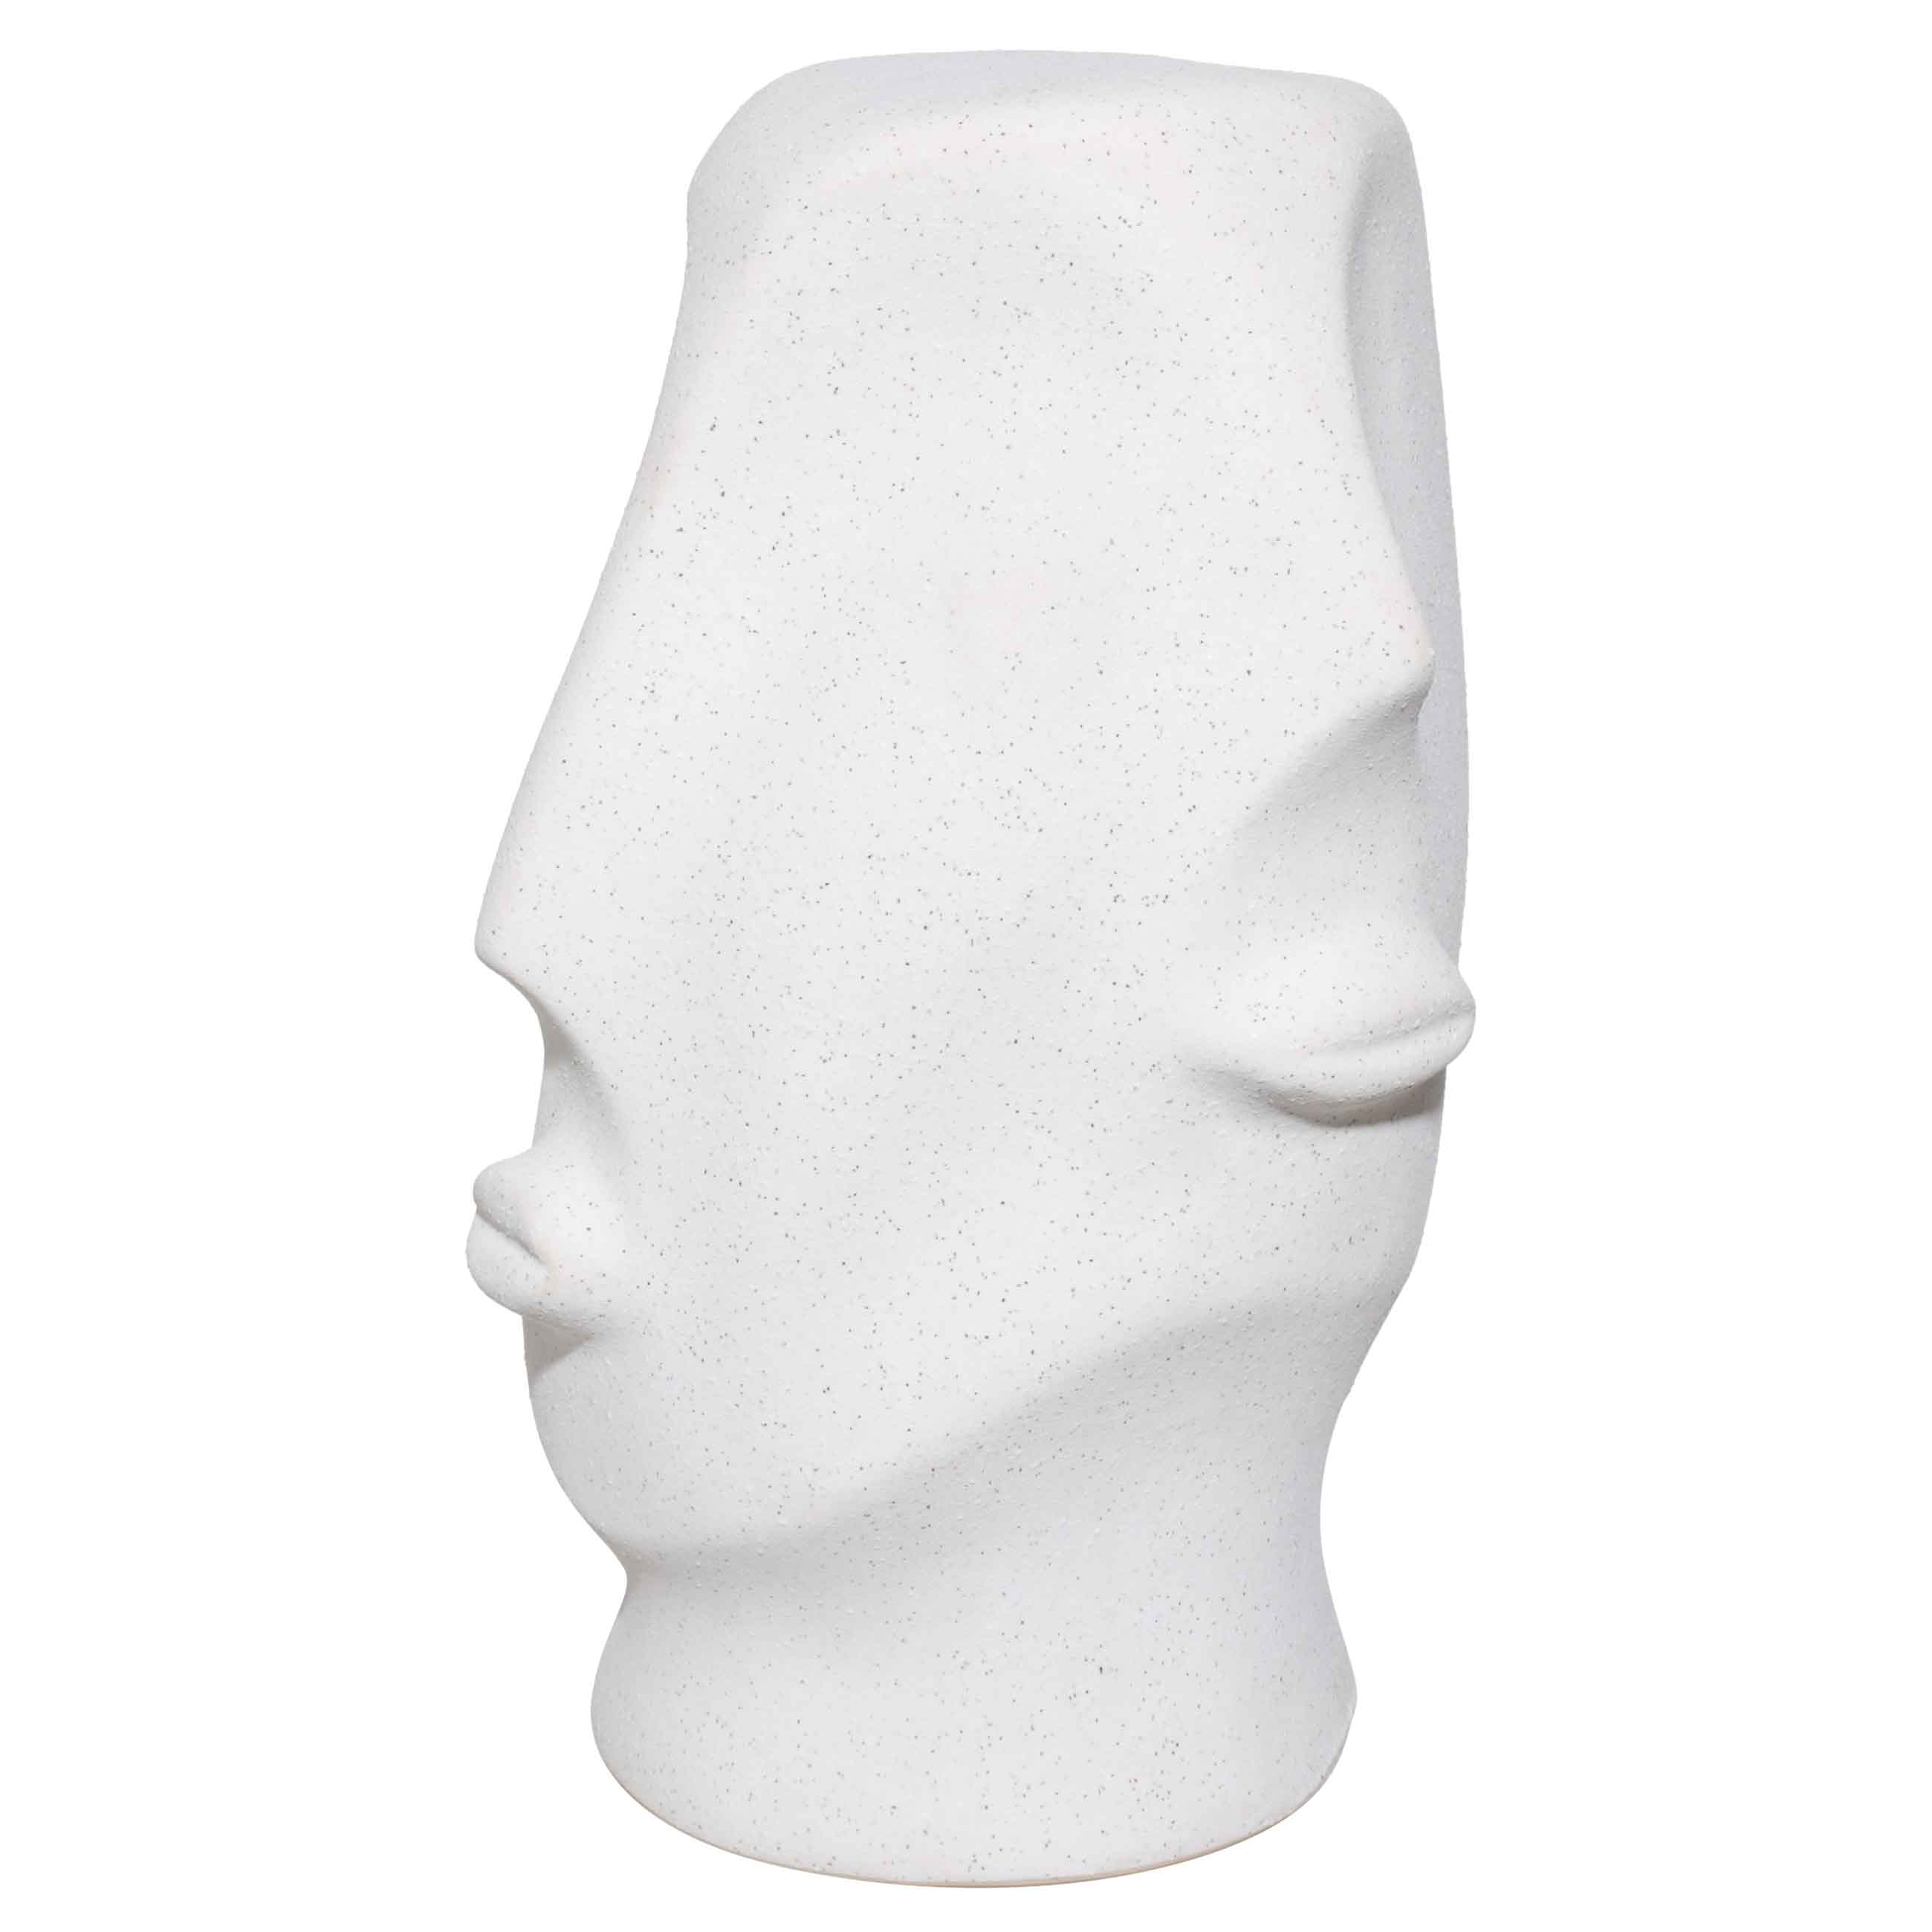 Статуэтка, 31 см, керамика, молочная, в крапинку, Лица, Faces изображение № 3